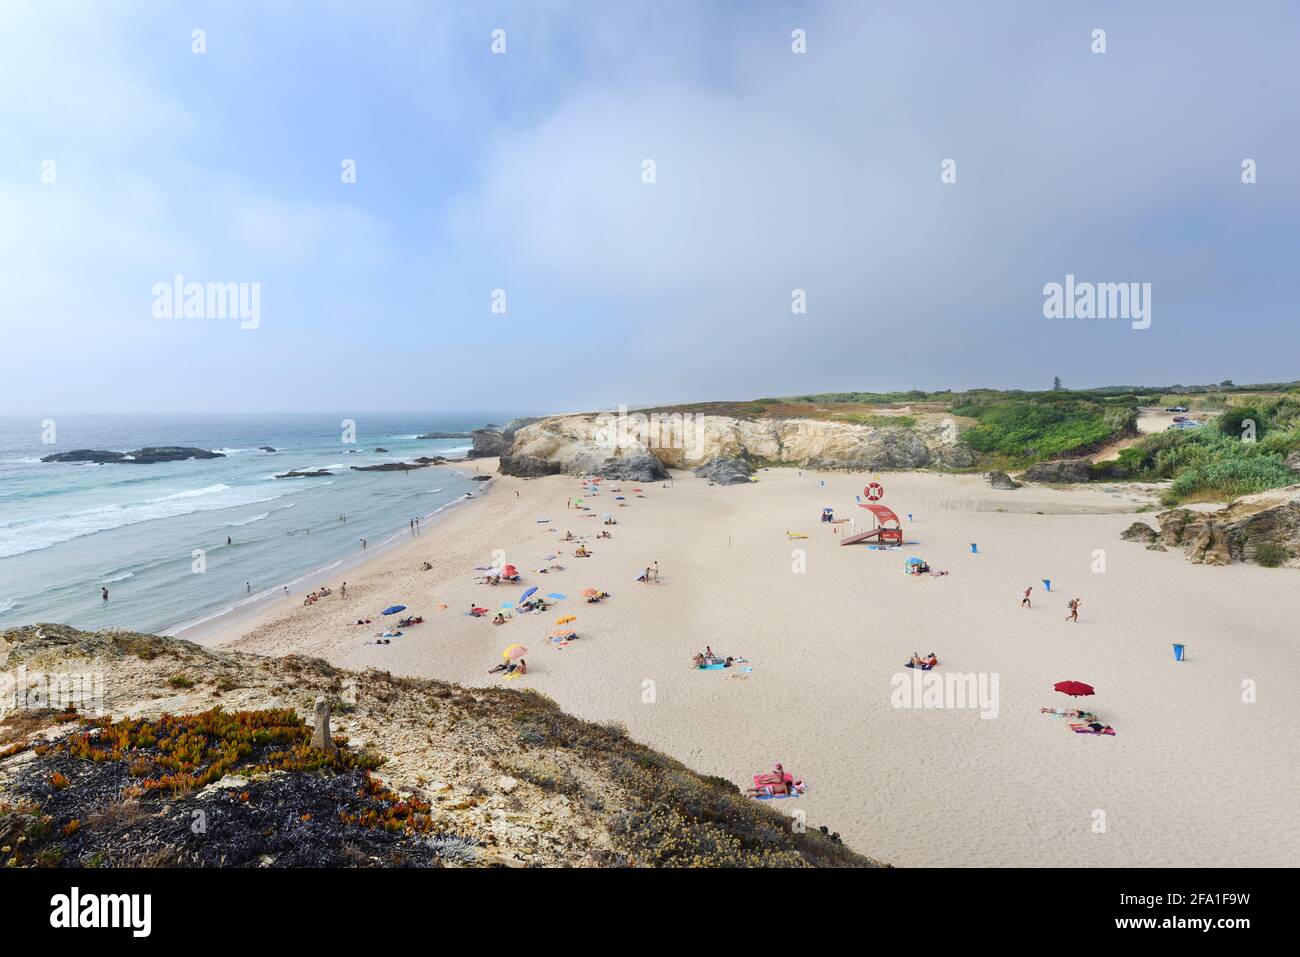 Praia Grande de Porto Covo in Portugal. Stock Photo